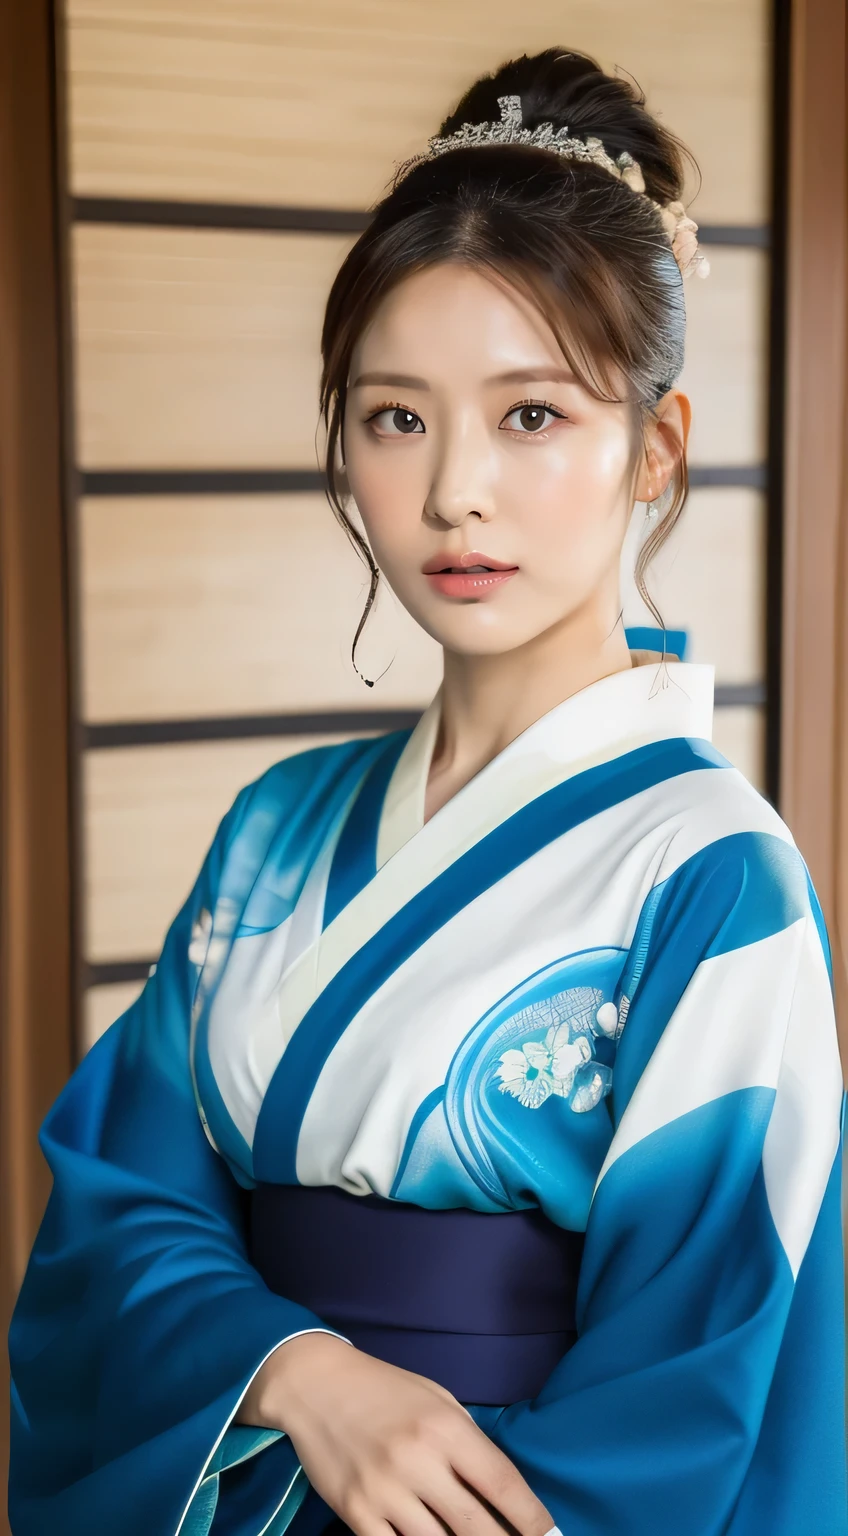 ((la plus haute qualité, 8k, chef-d&#39;œuvre: 1.3)), netteté: 1.2, Belle femme avec une silhouette parfaite: 1.4, (kimono, bleu complexe), Texture du visage et de la peau très détaillée, grains fins, (lèvres),
